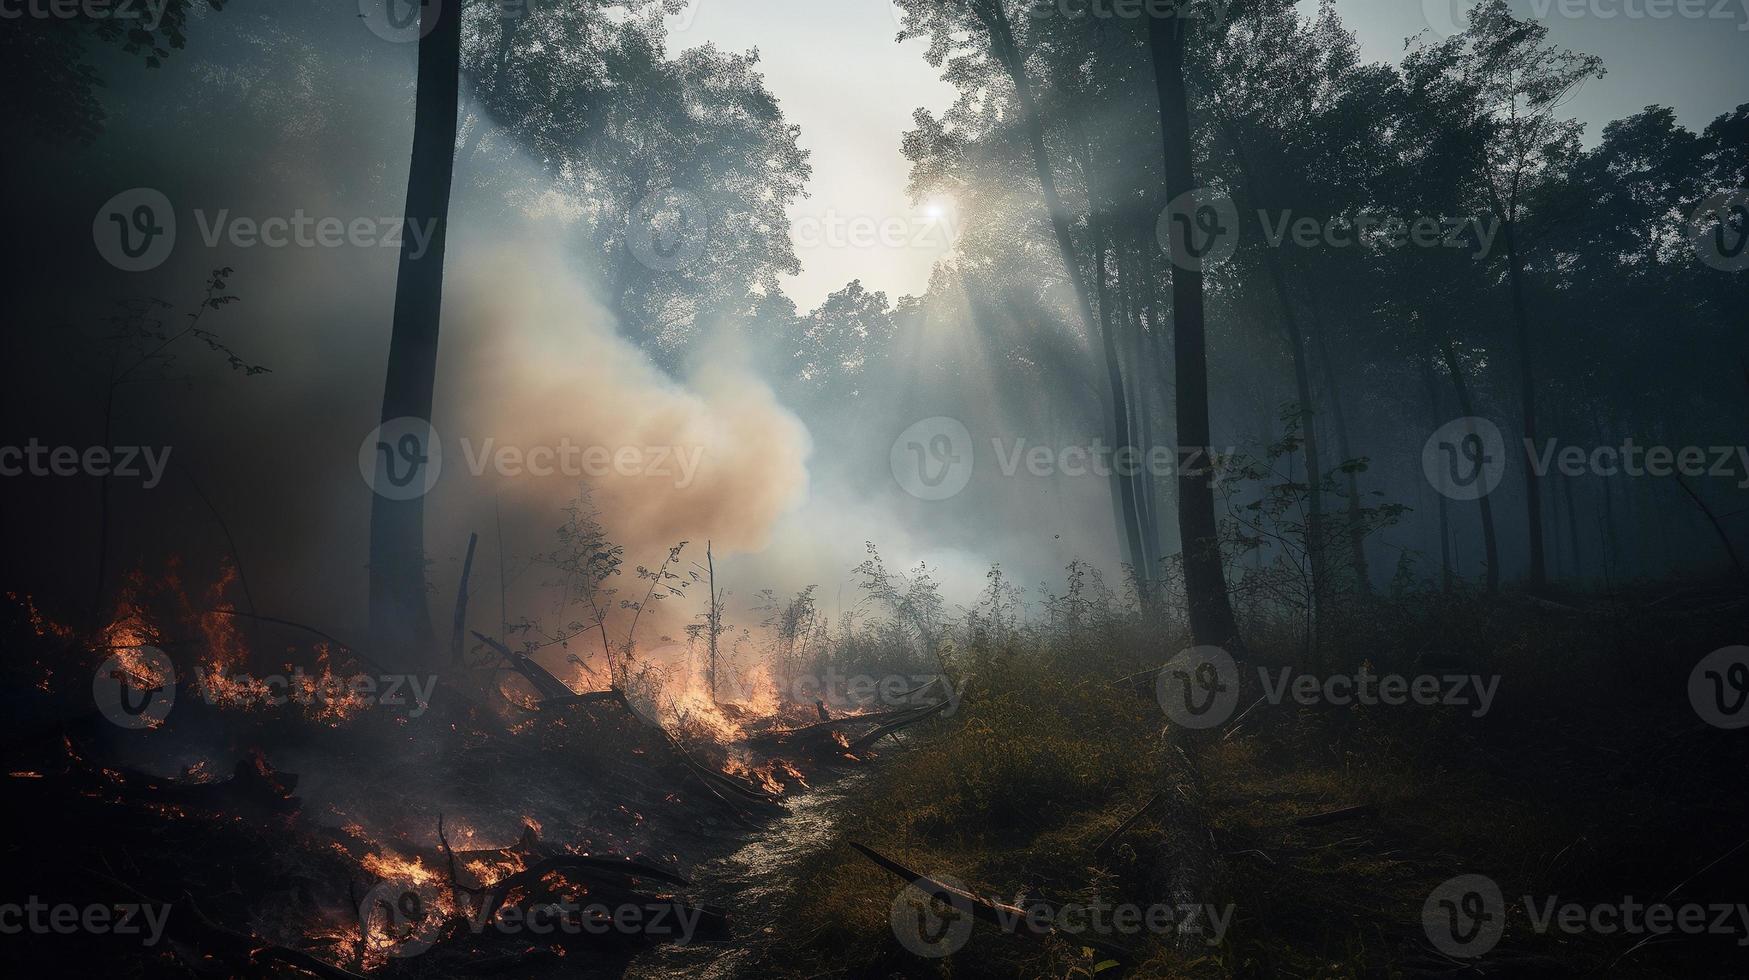 Woud brand in de Woud. de concept van ramp en ecologie, branden droog gras en bomen in de Woud foto